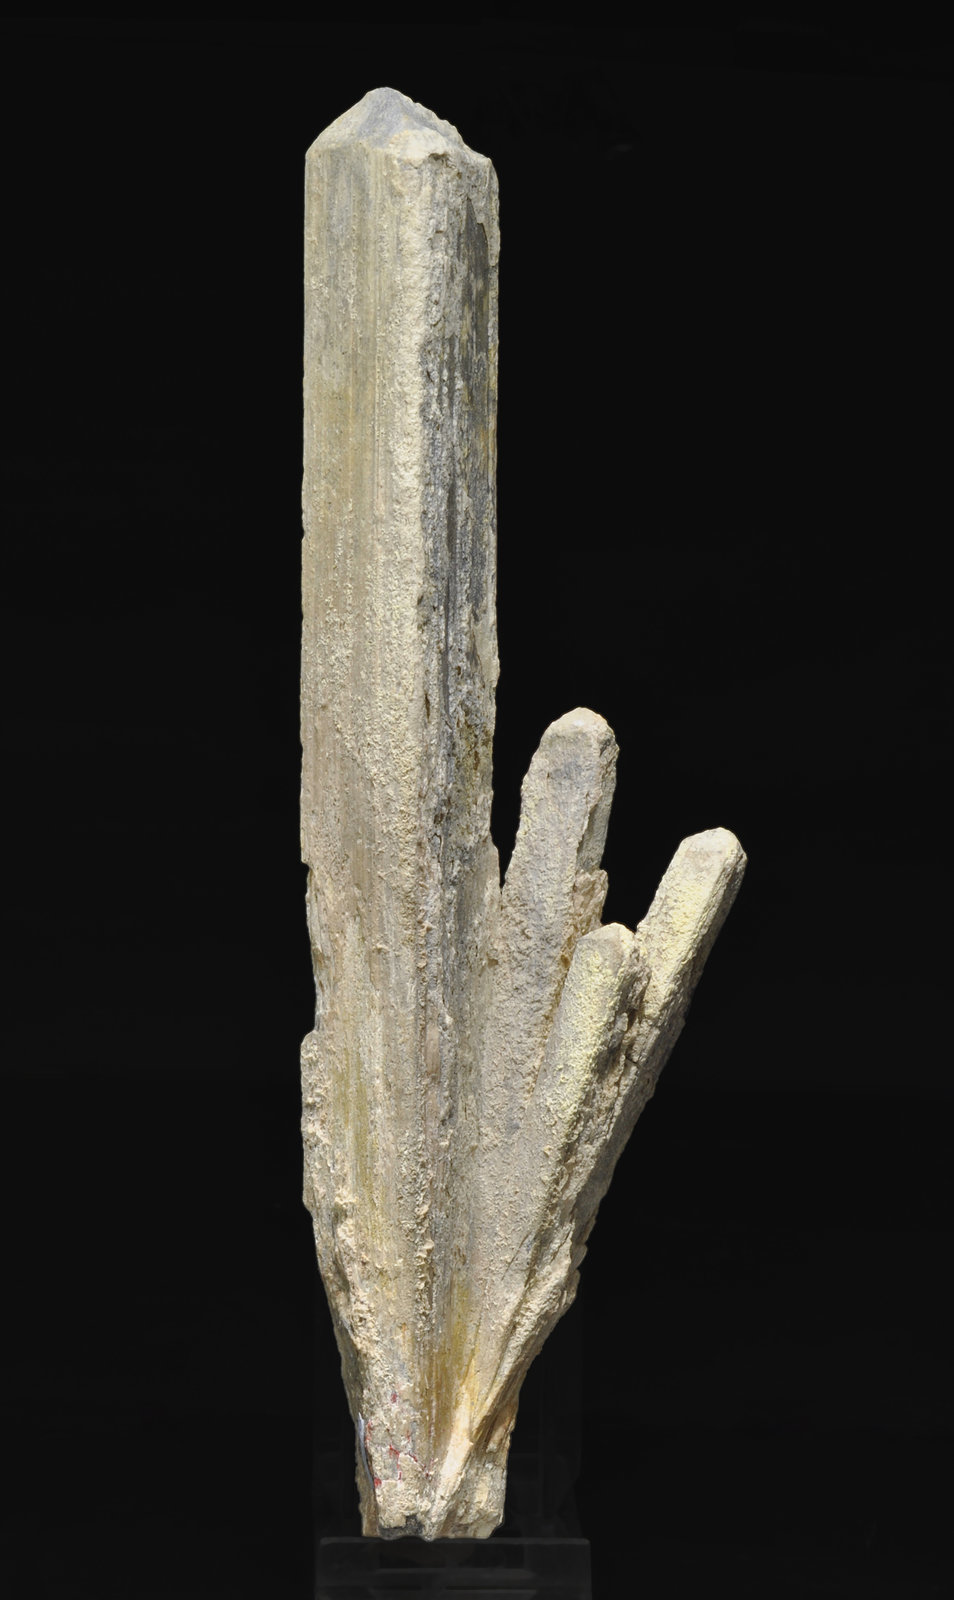 specimens/s_imagesQ8/Stibiconite-TR10Q8r.jpg